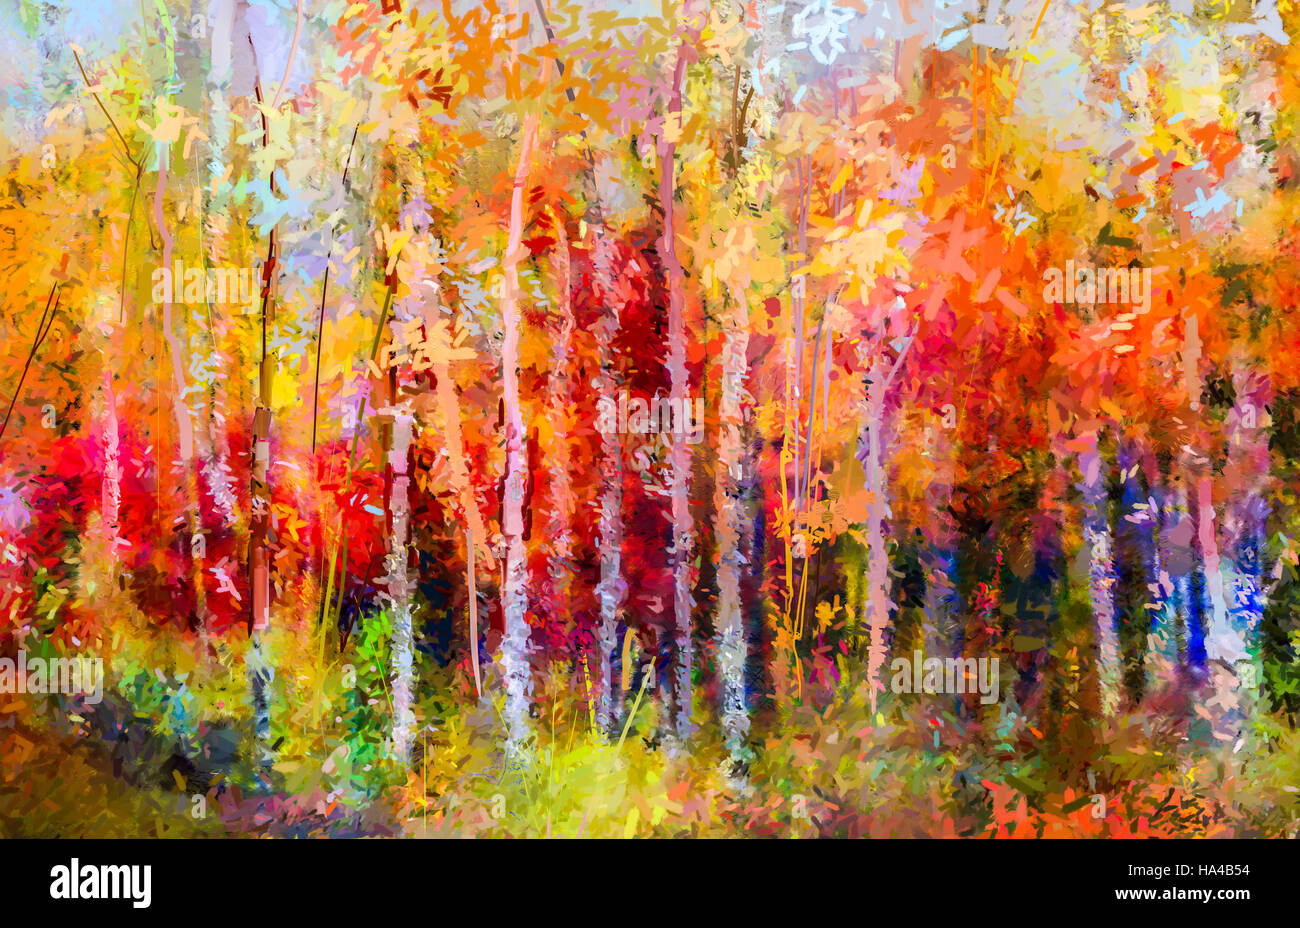 Peinture à l'huile - paysage arbres aux couleurs automnales. Peintures abstraites semi image de forêt, tremble avec du jaune et rouge. L'automne, saison d'automne natu Banque D'Images